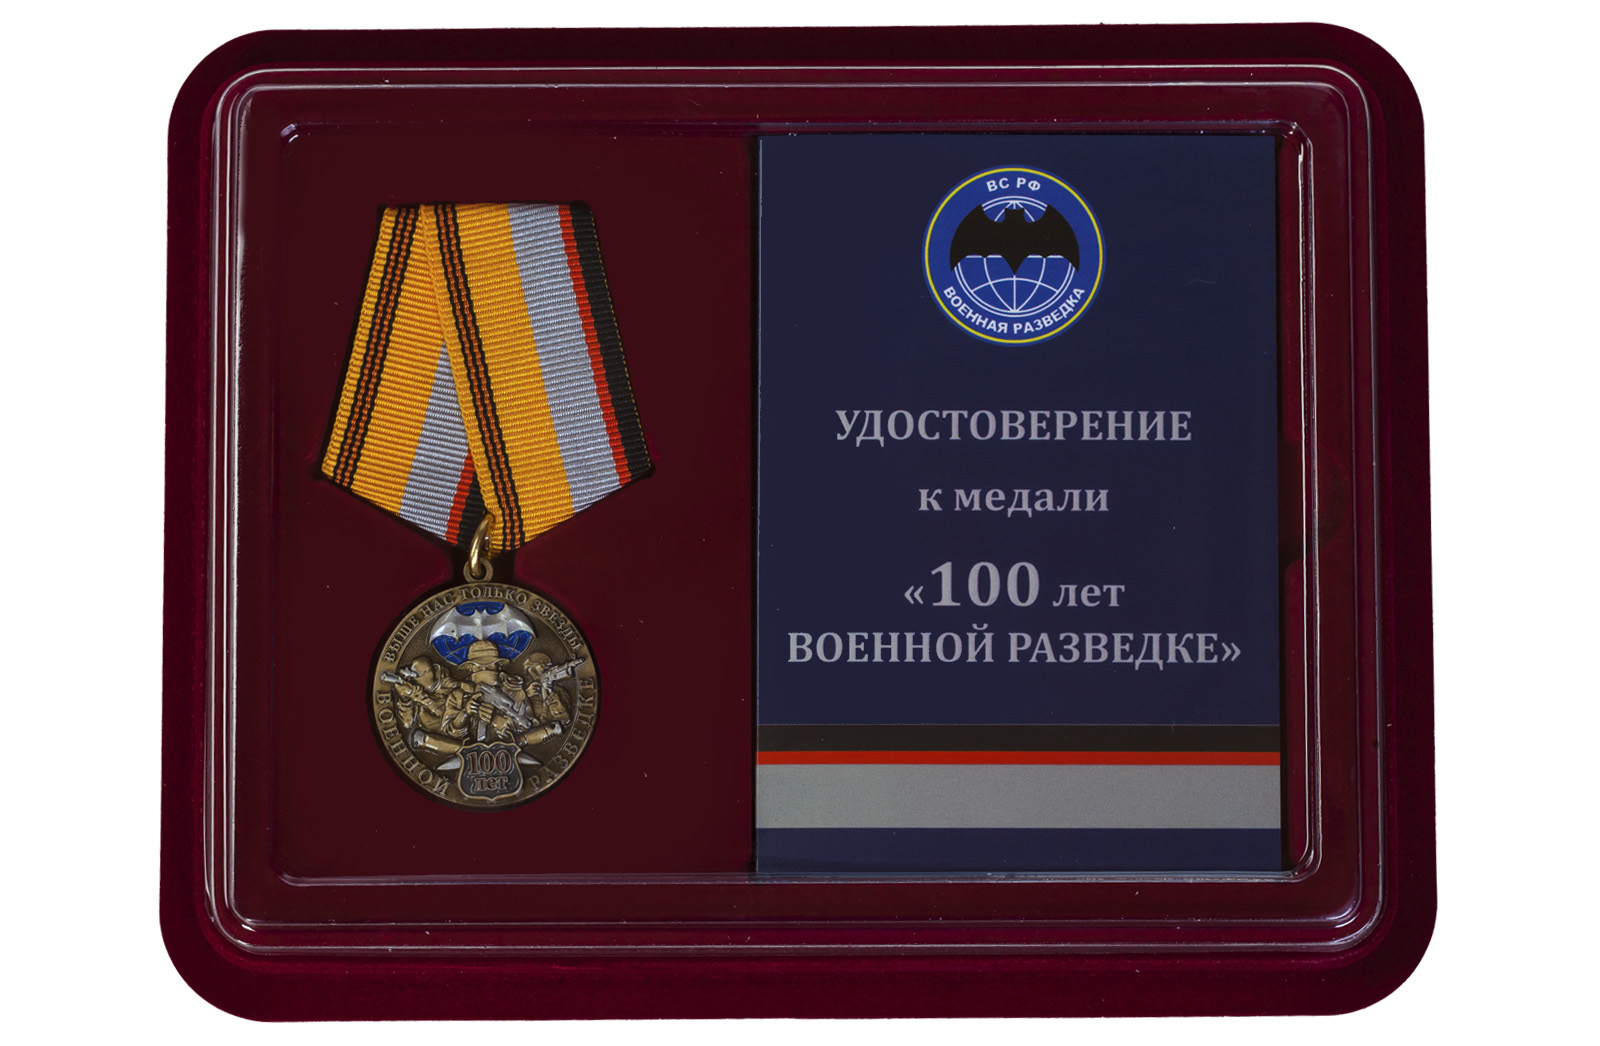 Купить юбилейную медаль к 100-летию Военной разведки в подарок